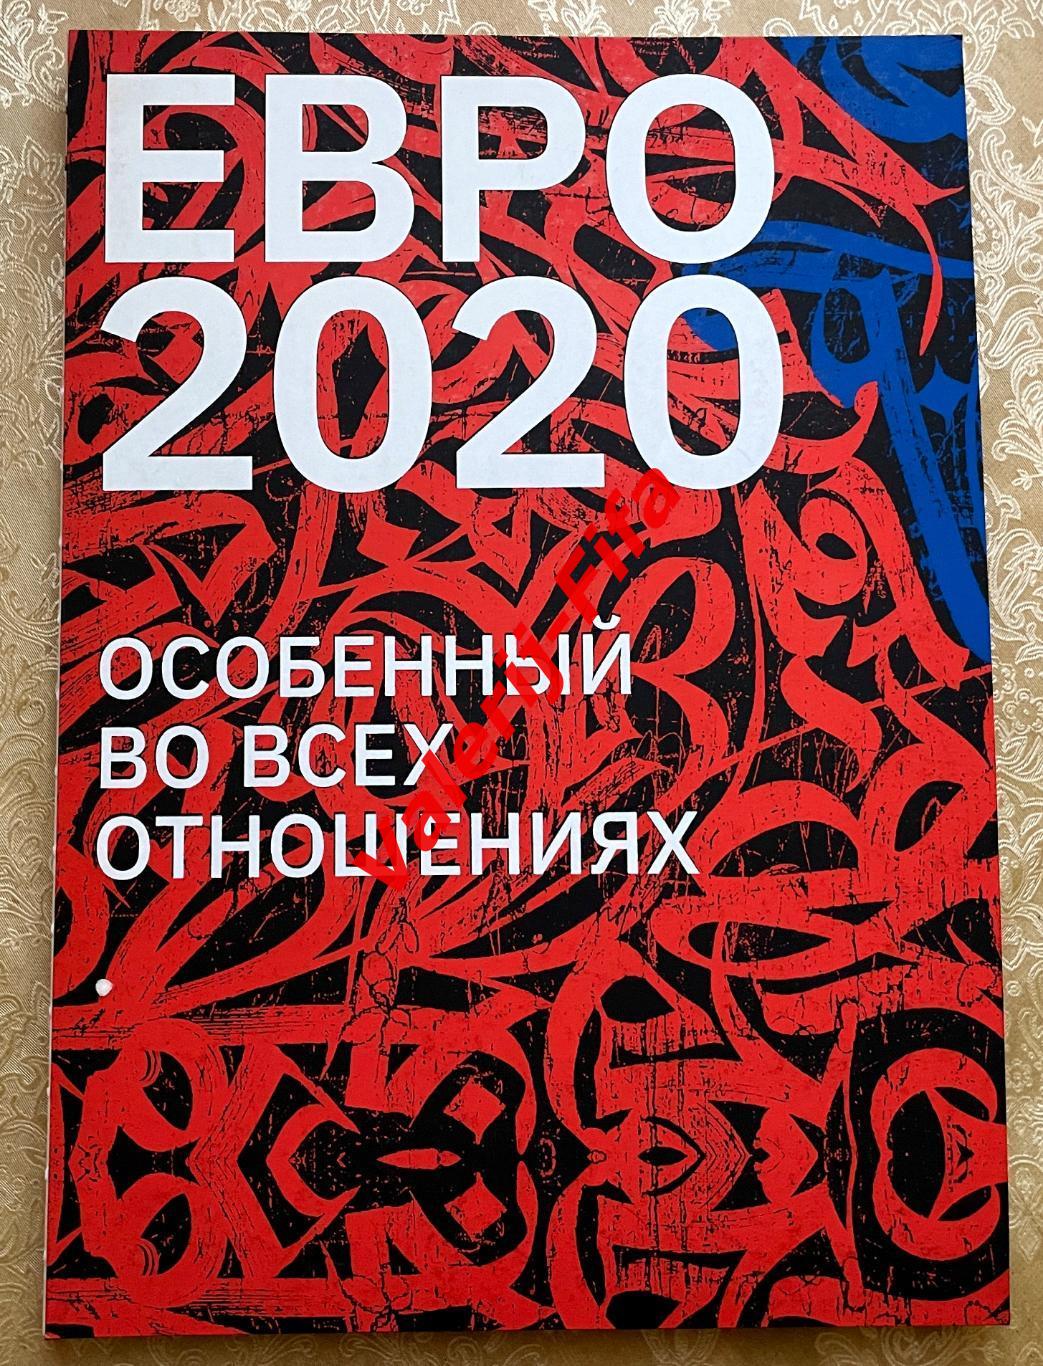 ЭКСКЛЮЗИВНЫЙ ФОТОАЛЬБОМ ЕВРО EURO 2020